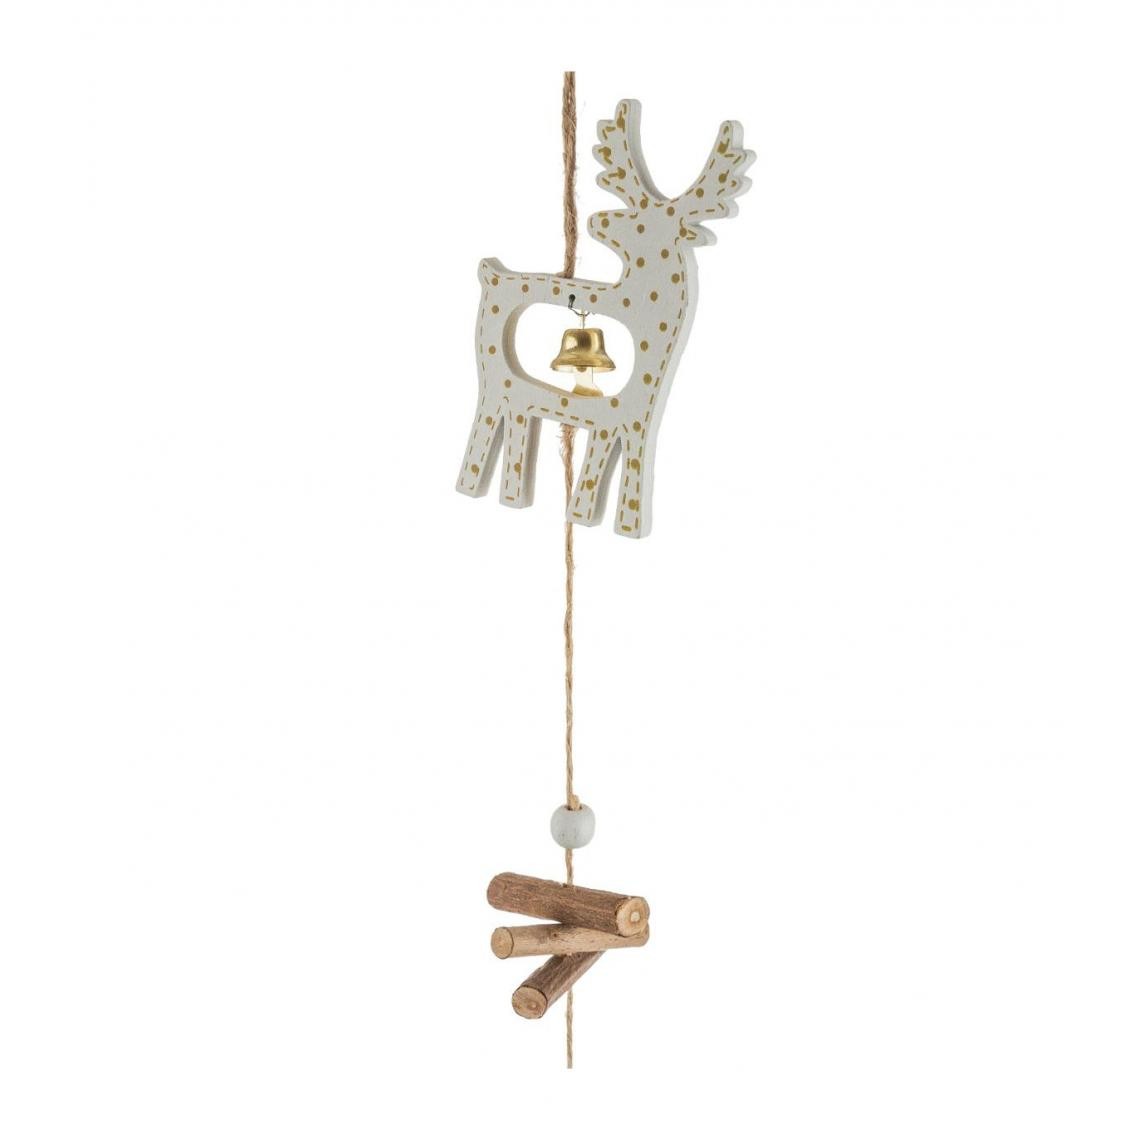 Feeric Lights And Christmas - Feeric Christmas - Guirlande de Noël Sujet en Bois avec clochette dorée L 150 cm - Décorations de Noël